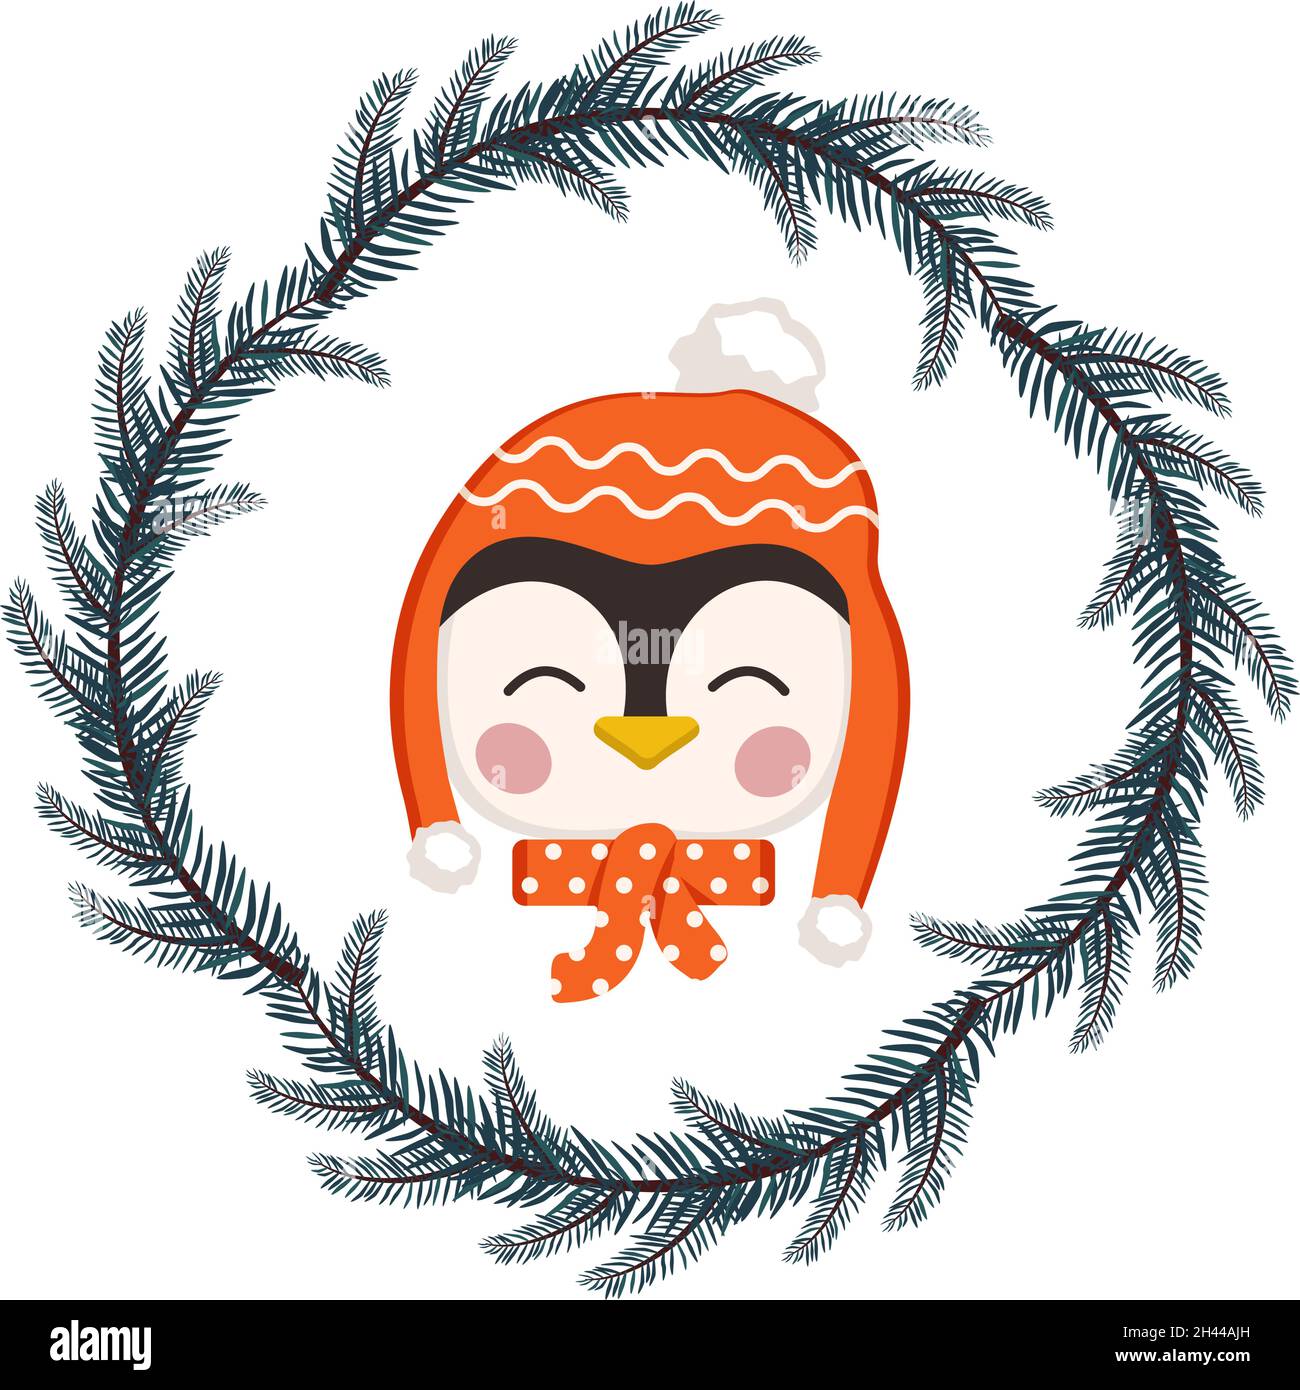 Joli pingouin en chapeau et écharpe style puéril avec cadre en couronne de Noël festive.Oiseau drôle avec le visage heureux.Illustration vectorielle plate pour les vacances et le nouvel an Illustration de Vecteur